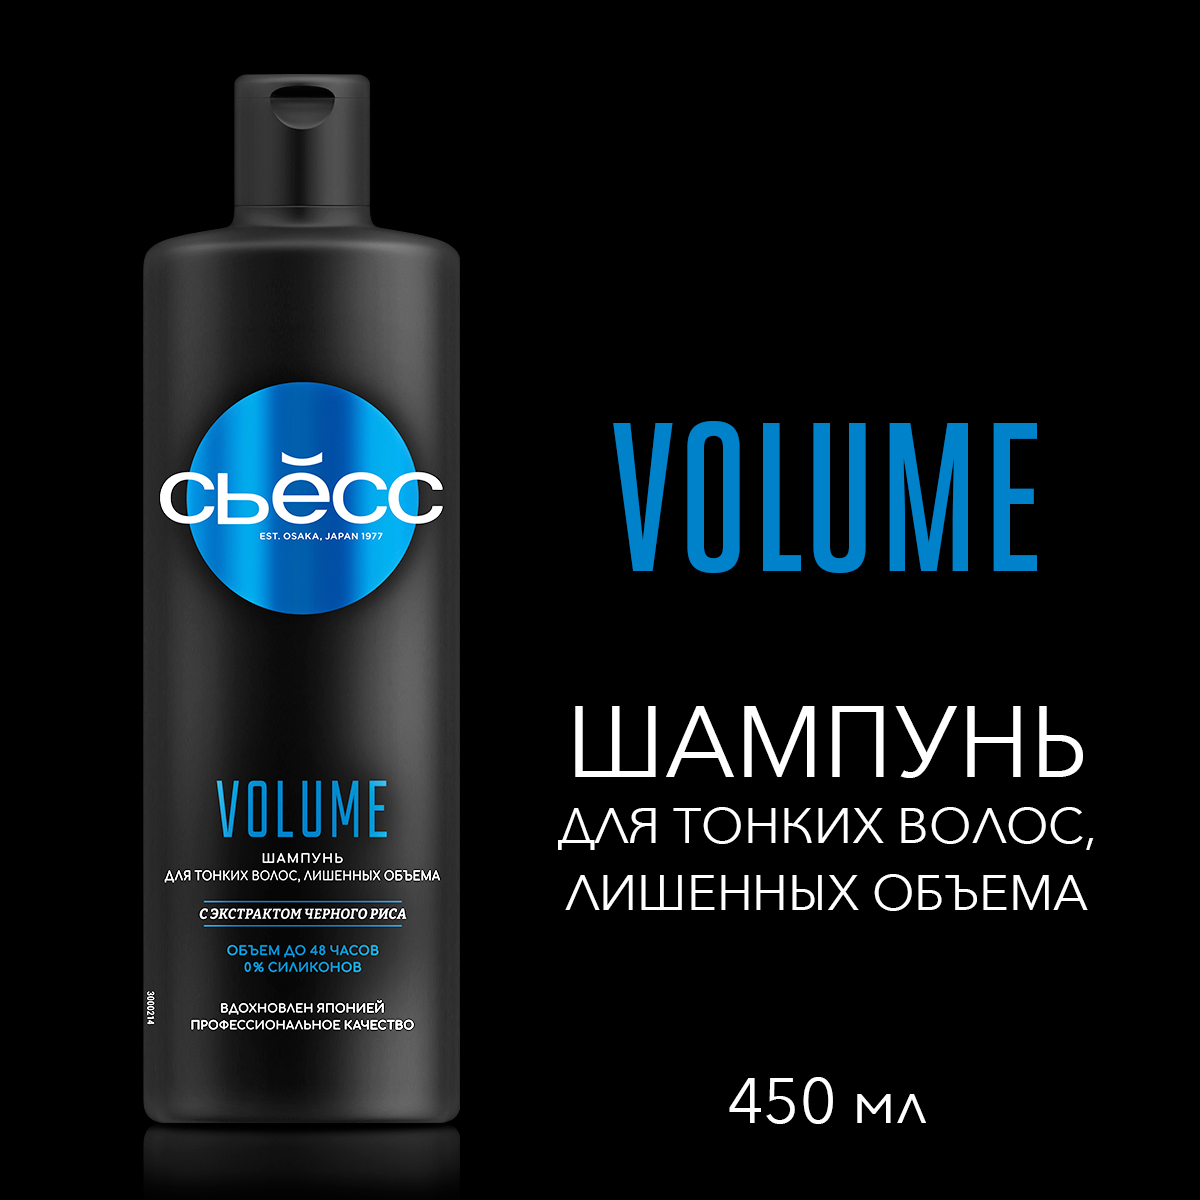 Шампунь СЬЕСС Volume для тонких волос, воздушный объём без утяжеления, 450 мл ichthyonella бальзам для волос активный после применения шампуня 200